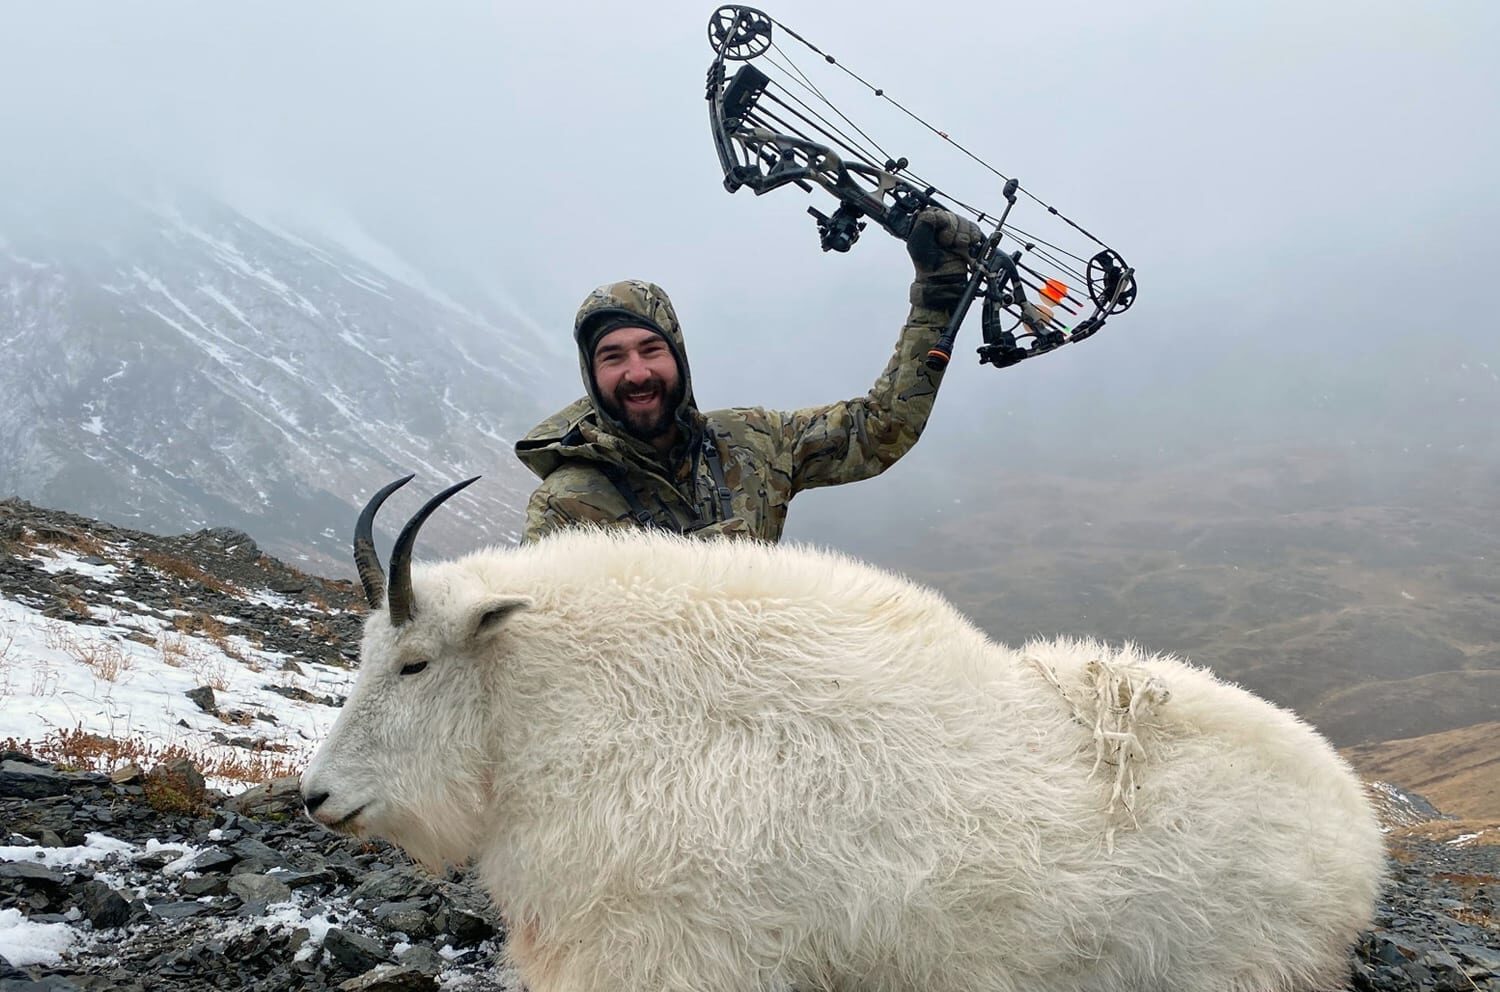 AJ Kissel with his archery Kodiak Mountain goat.